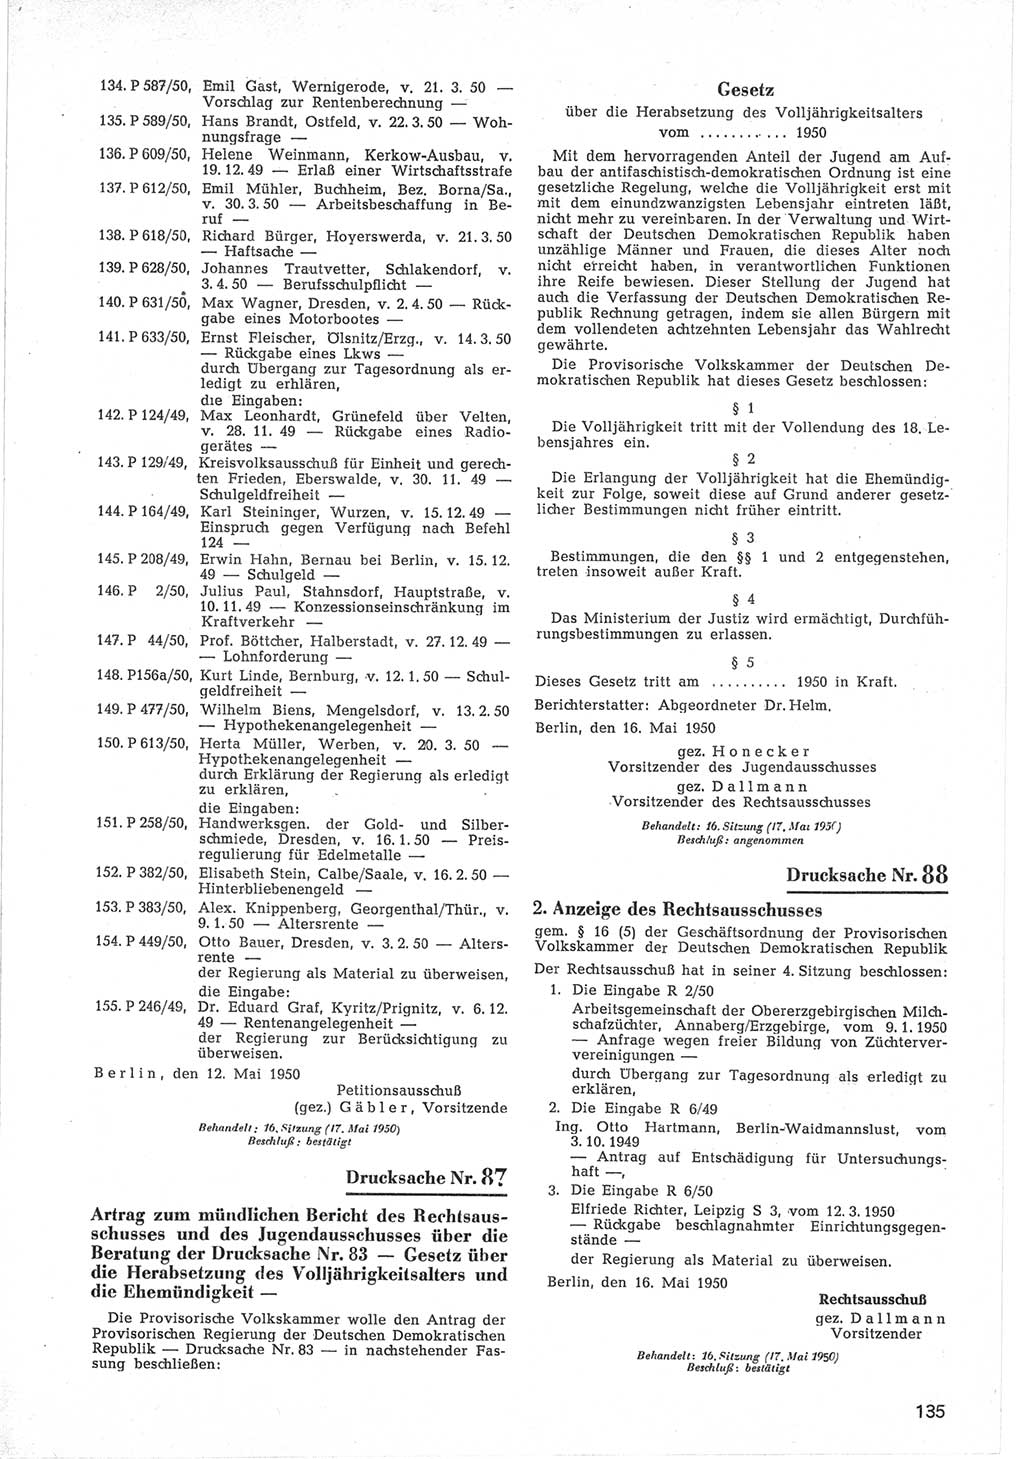 Provisorische Volkskammer (VK) der Deutschen Demokratischen Republik (DDR) 1949-1950, Dokument 737 (Prov. VK DDR 1949-1950, Dok. 737)